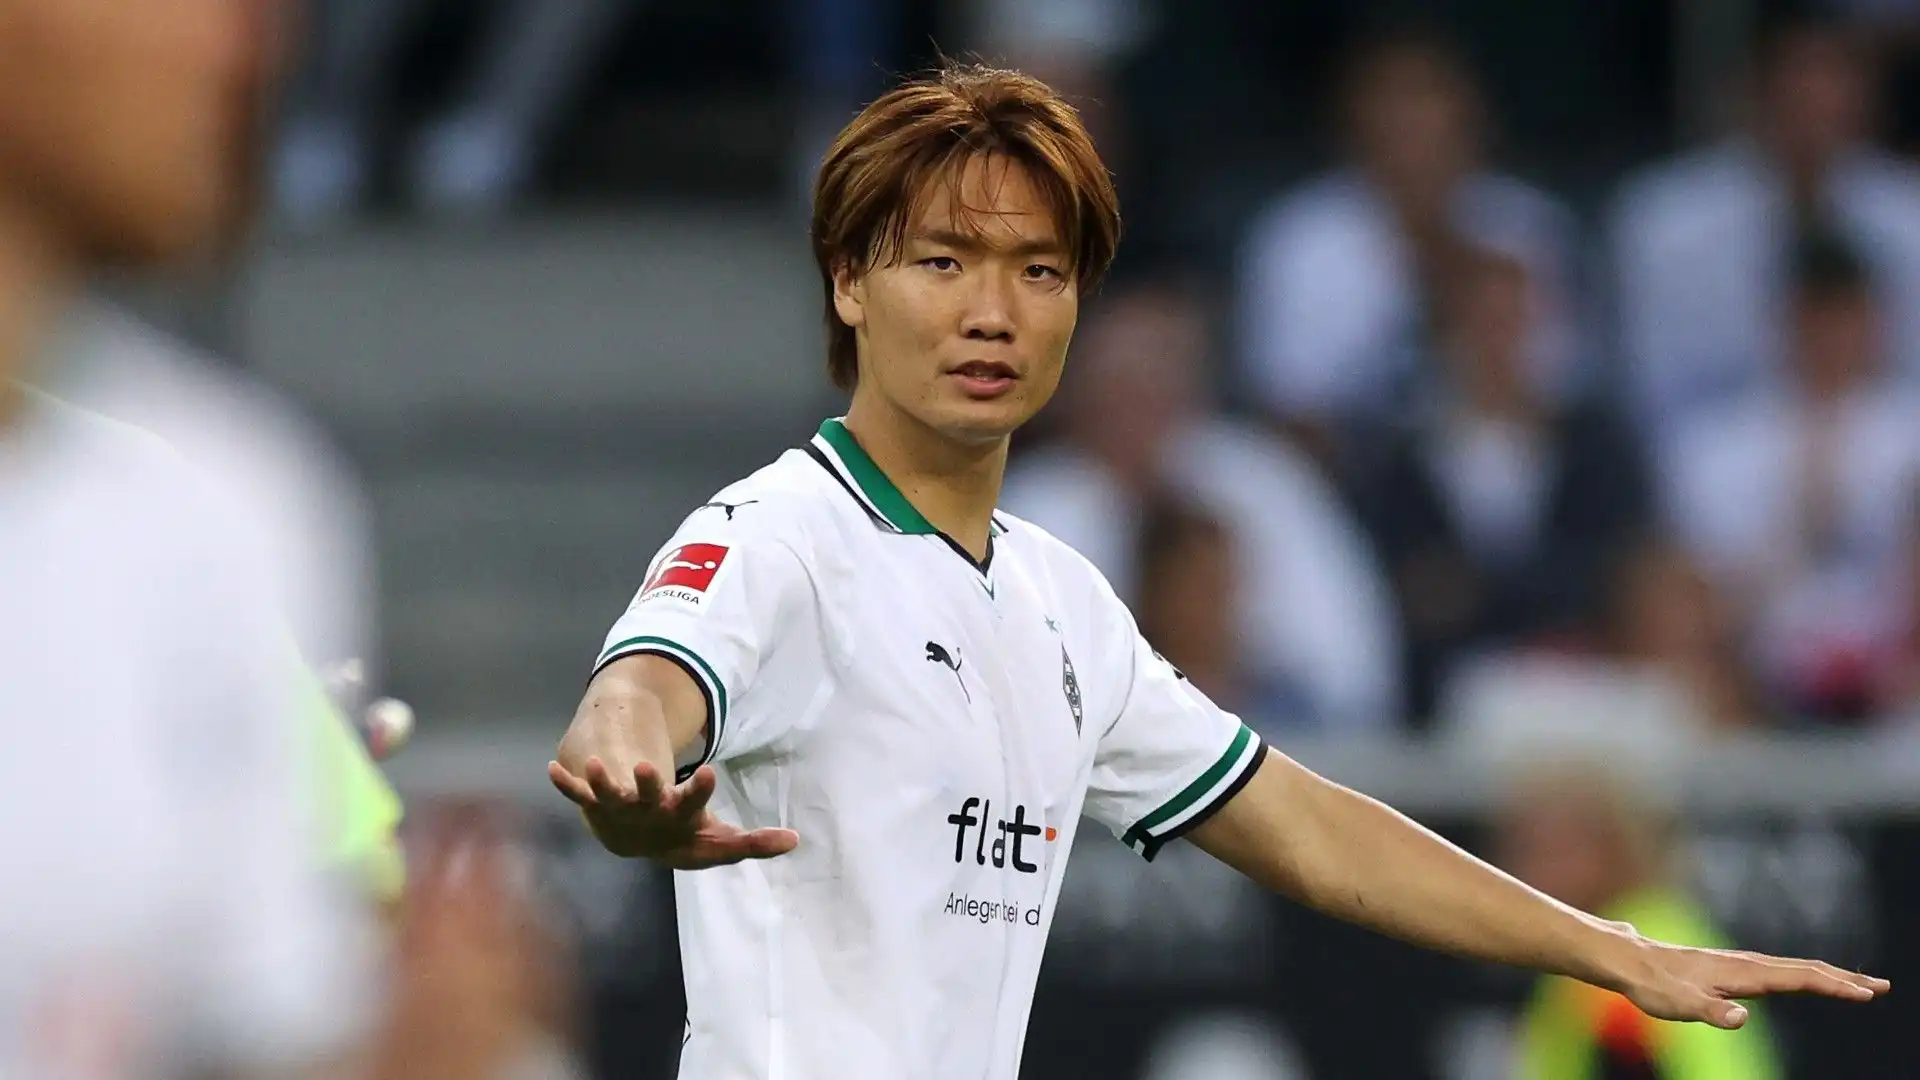 Difensore centrale: anche Ko Itakura gioca in Germania, nel Borussia Monchengladbach, vale 15 milioni di euro